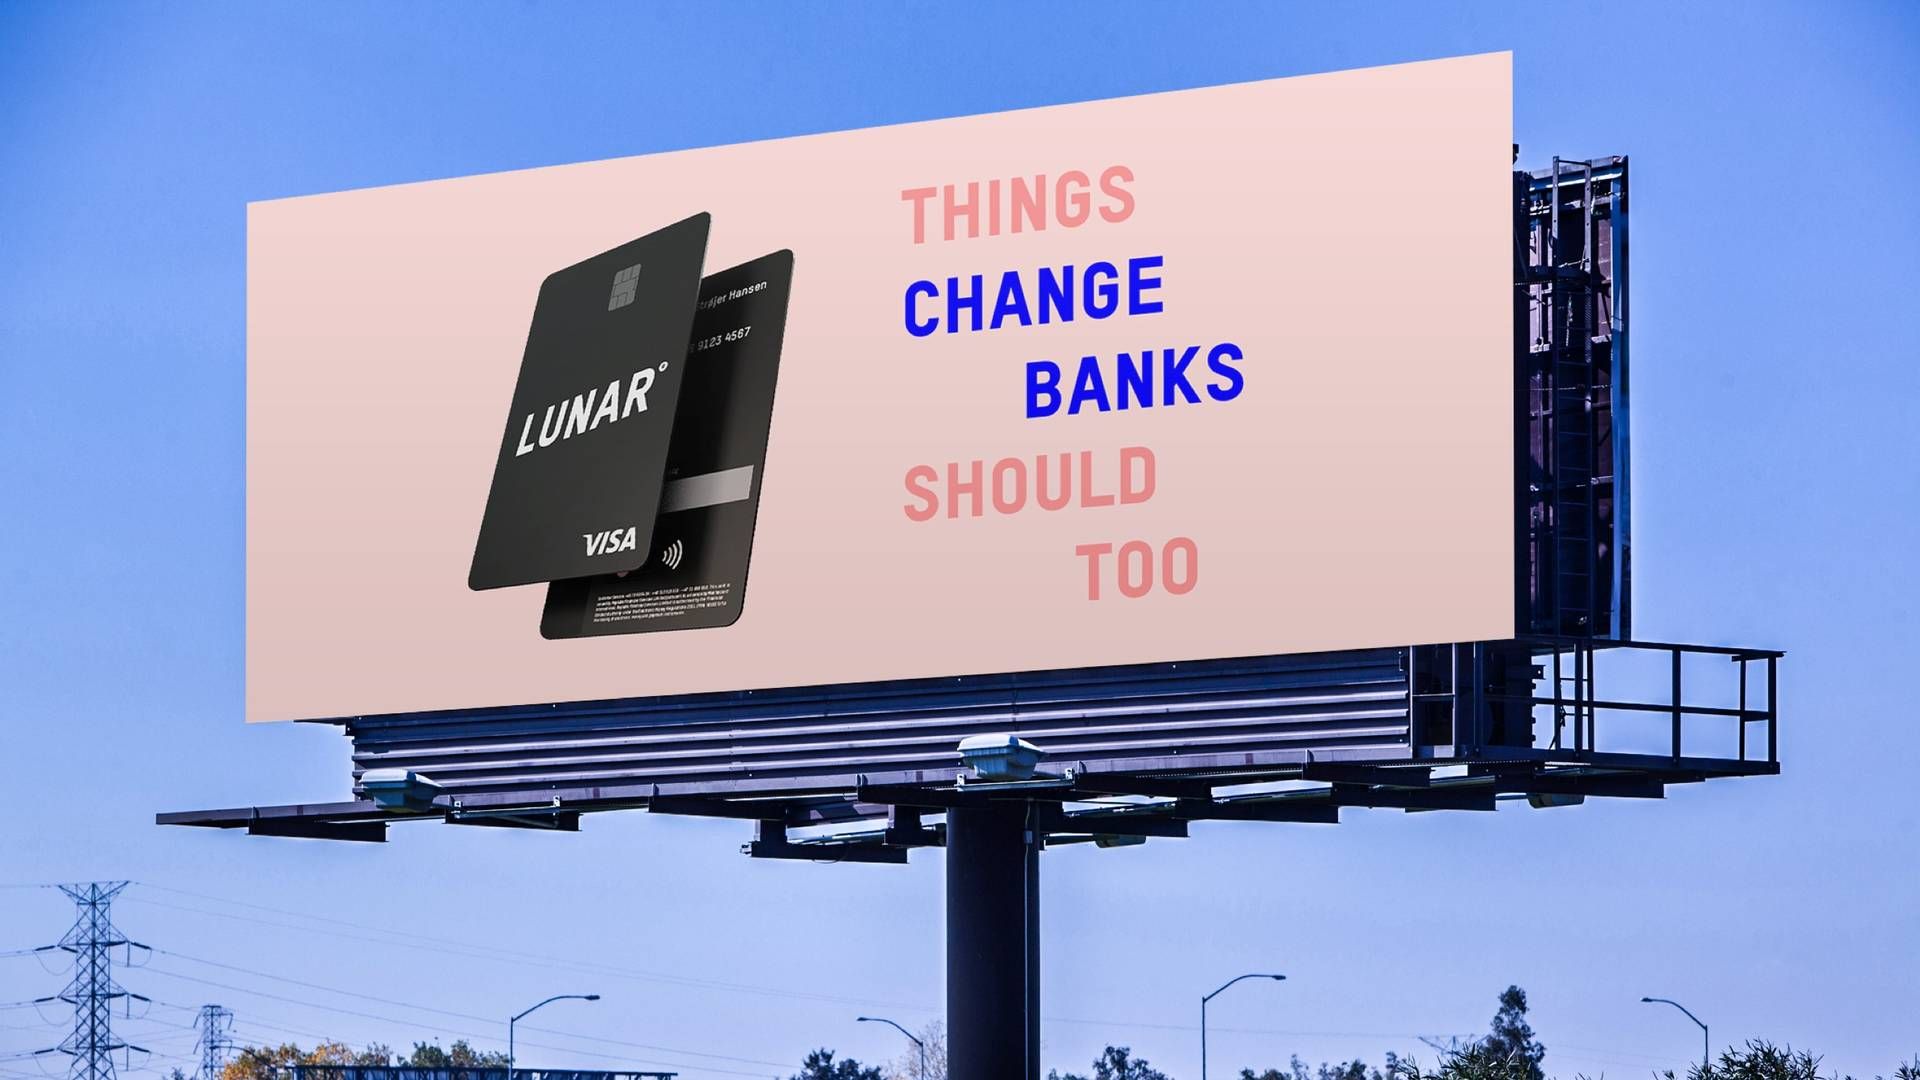 Lunar kom i 2015 med en mobilapp, der skulle udfordre de etablerede banker. | Foto: Pr/lunar